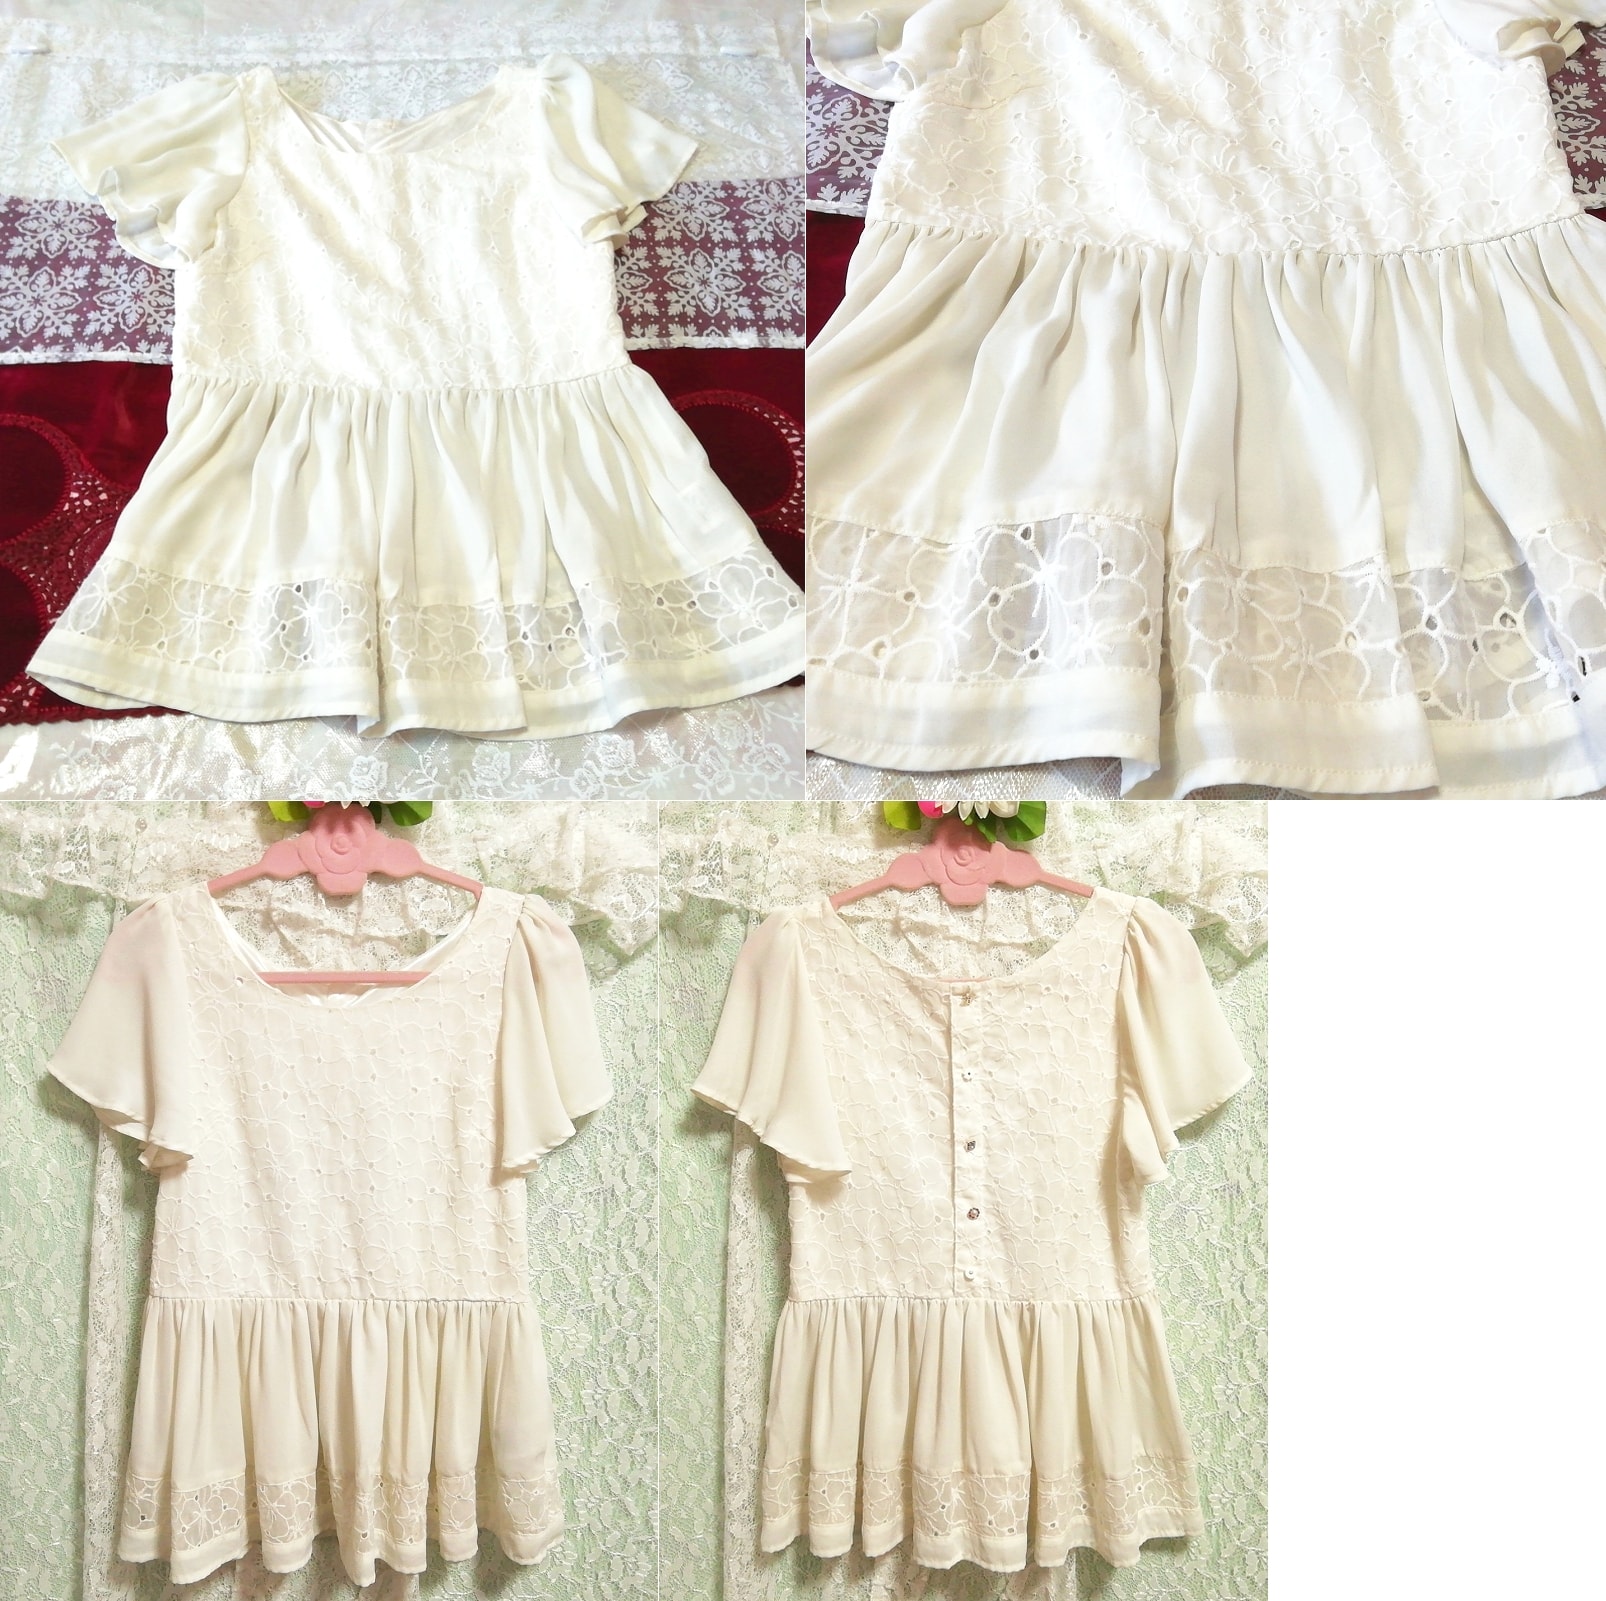 White lace chiffon beautiful button short sleeve tunic negligee nightgown dress, tunic, short sleeve, m size